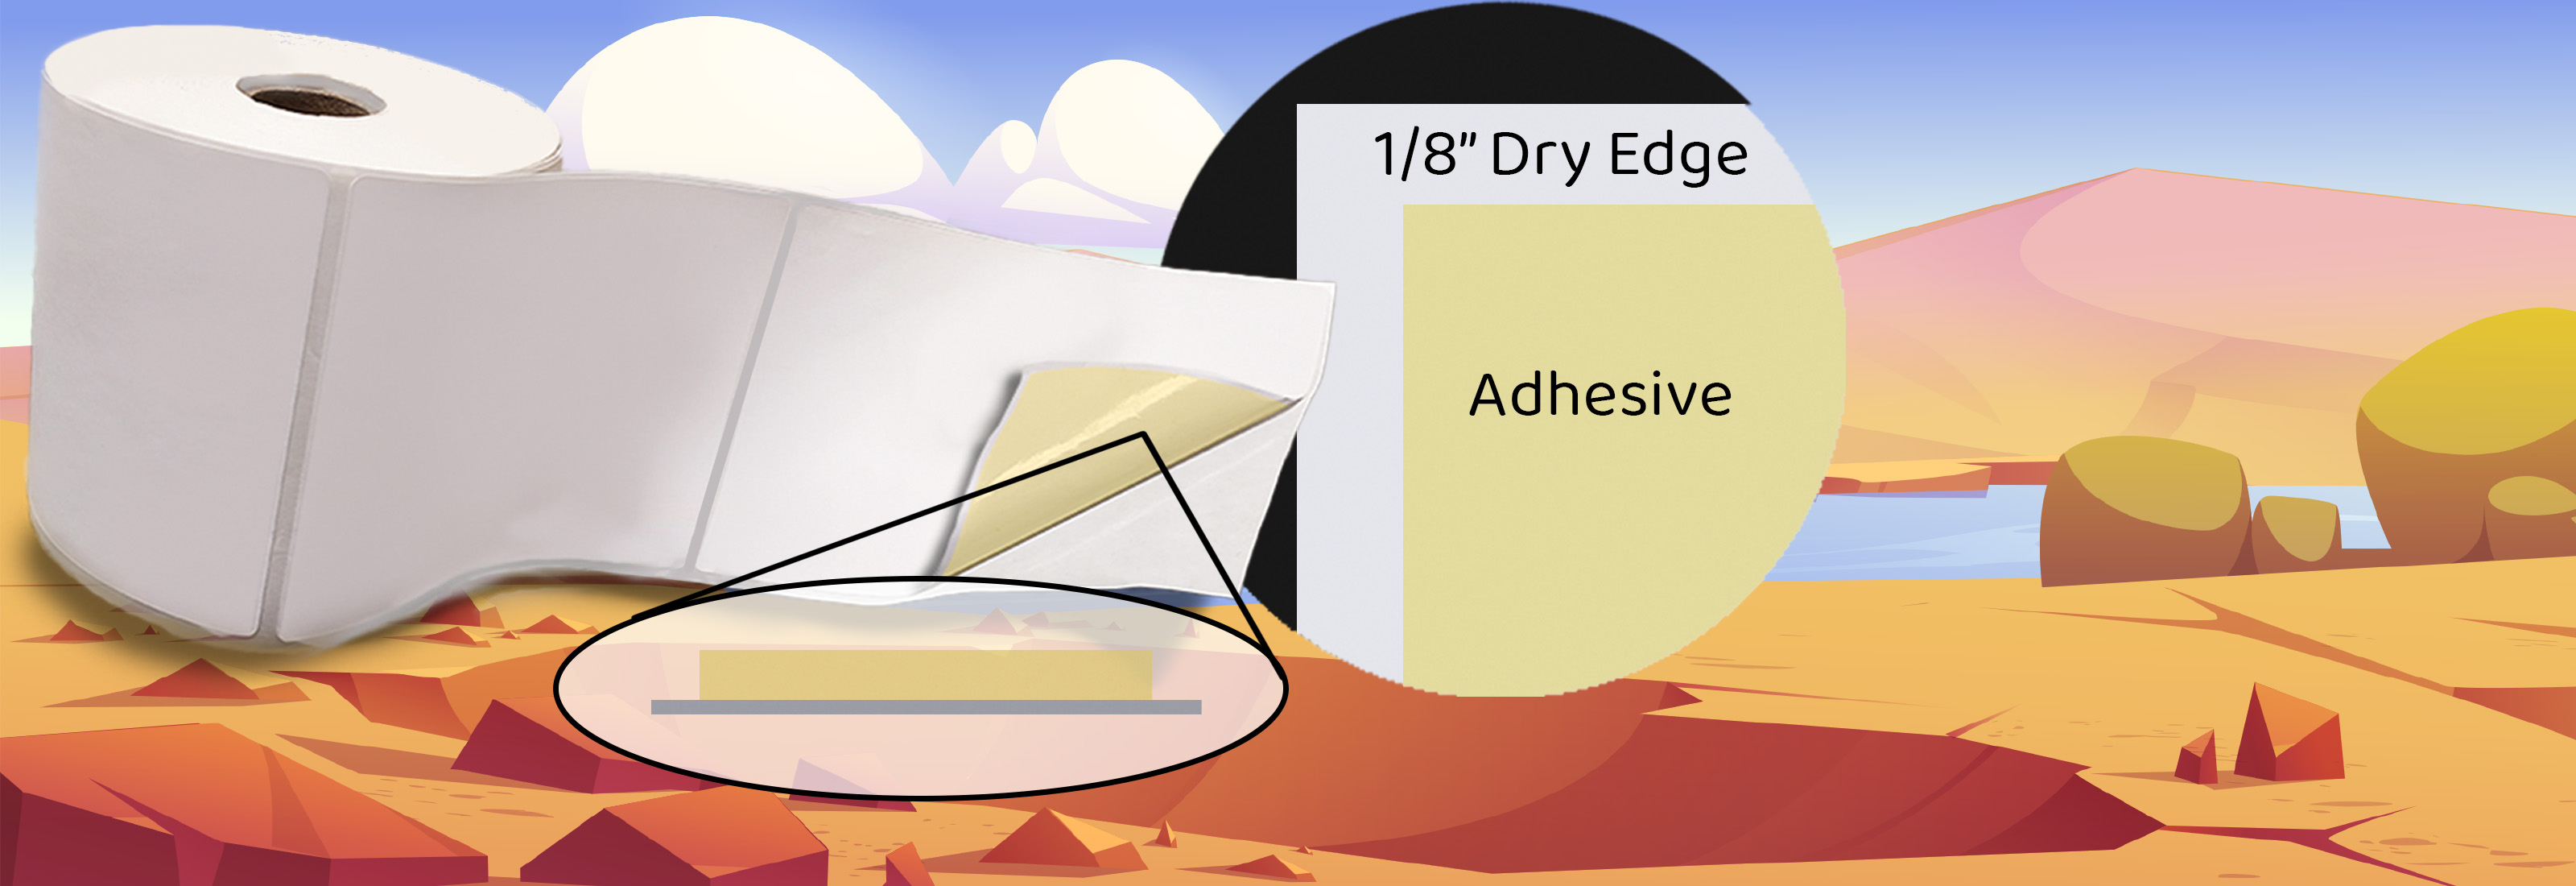 Dry Edge Slider1.2